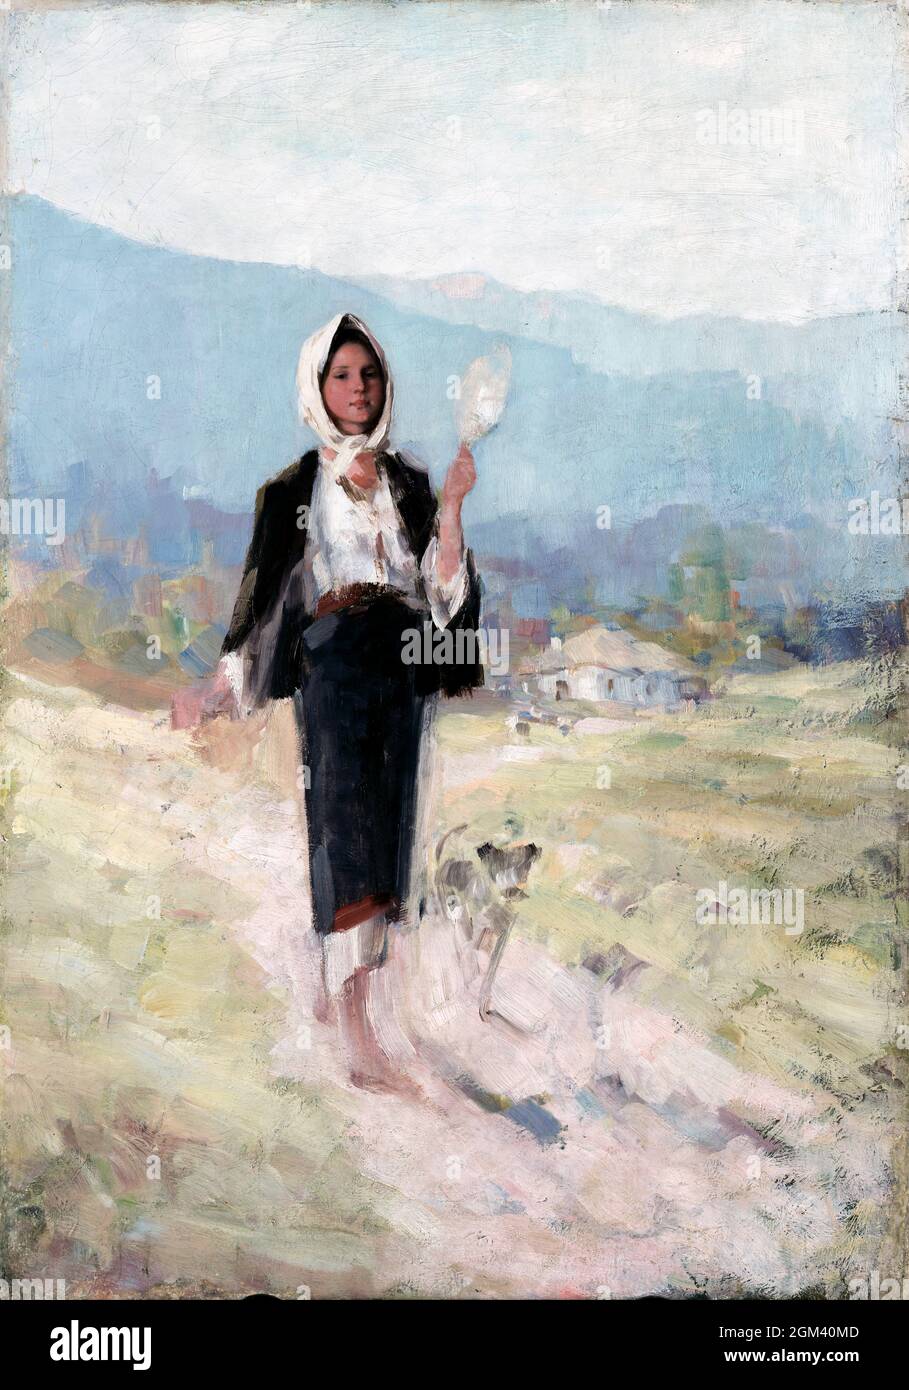 Bauernfrau mit distaff des rumänischen Künstlers Nicolae Grigorescu (1838-1907), Öl auf Leinwand, c. 1900 Stockfoto